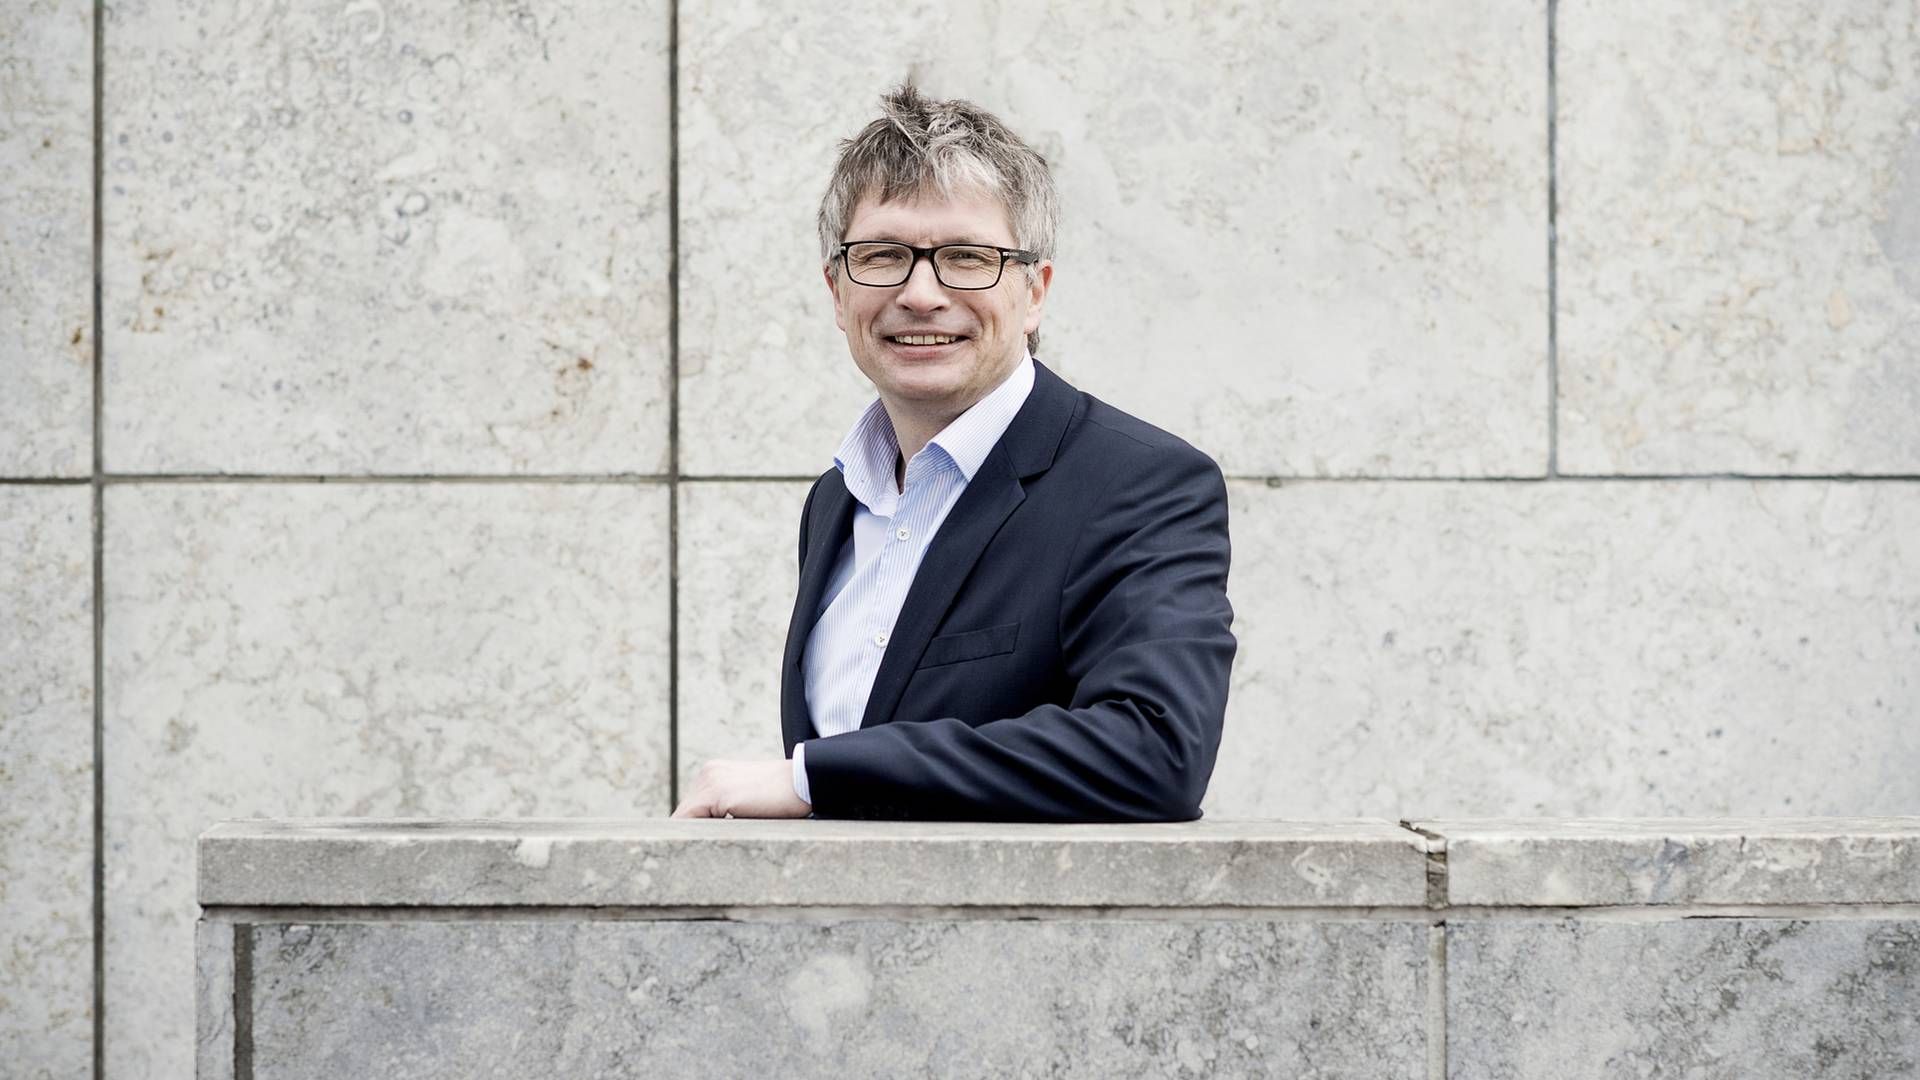 Morten Østrup Møller stoppede i 2020 som juridisk direktør i Ejendomdanmark for at blive chef for asset management hos pensionsselskabet P+. | Foto: Camilla Rønde